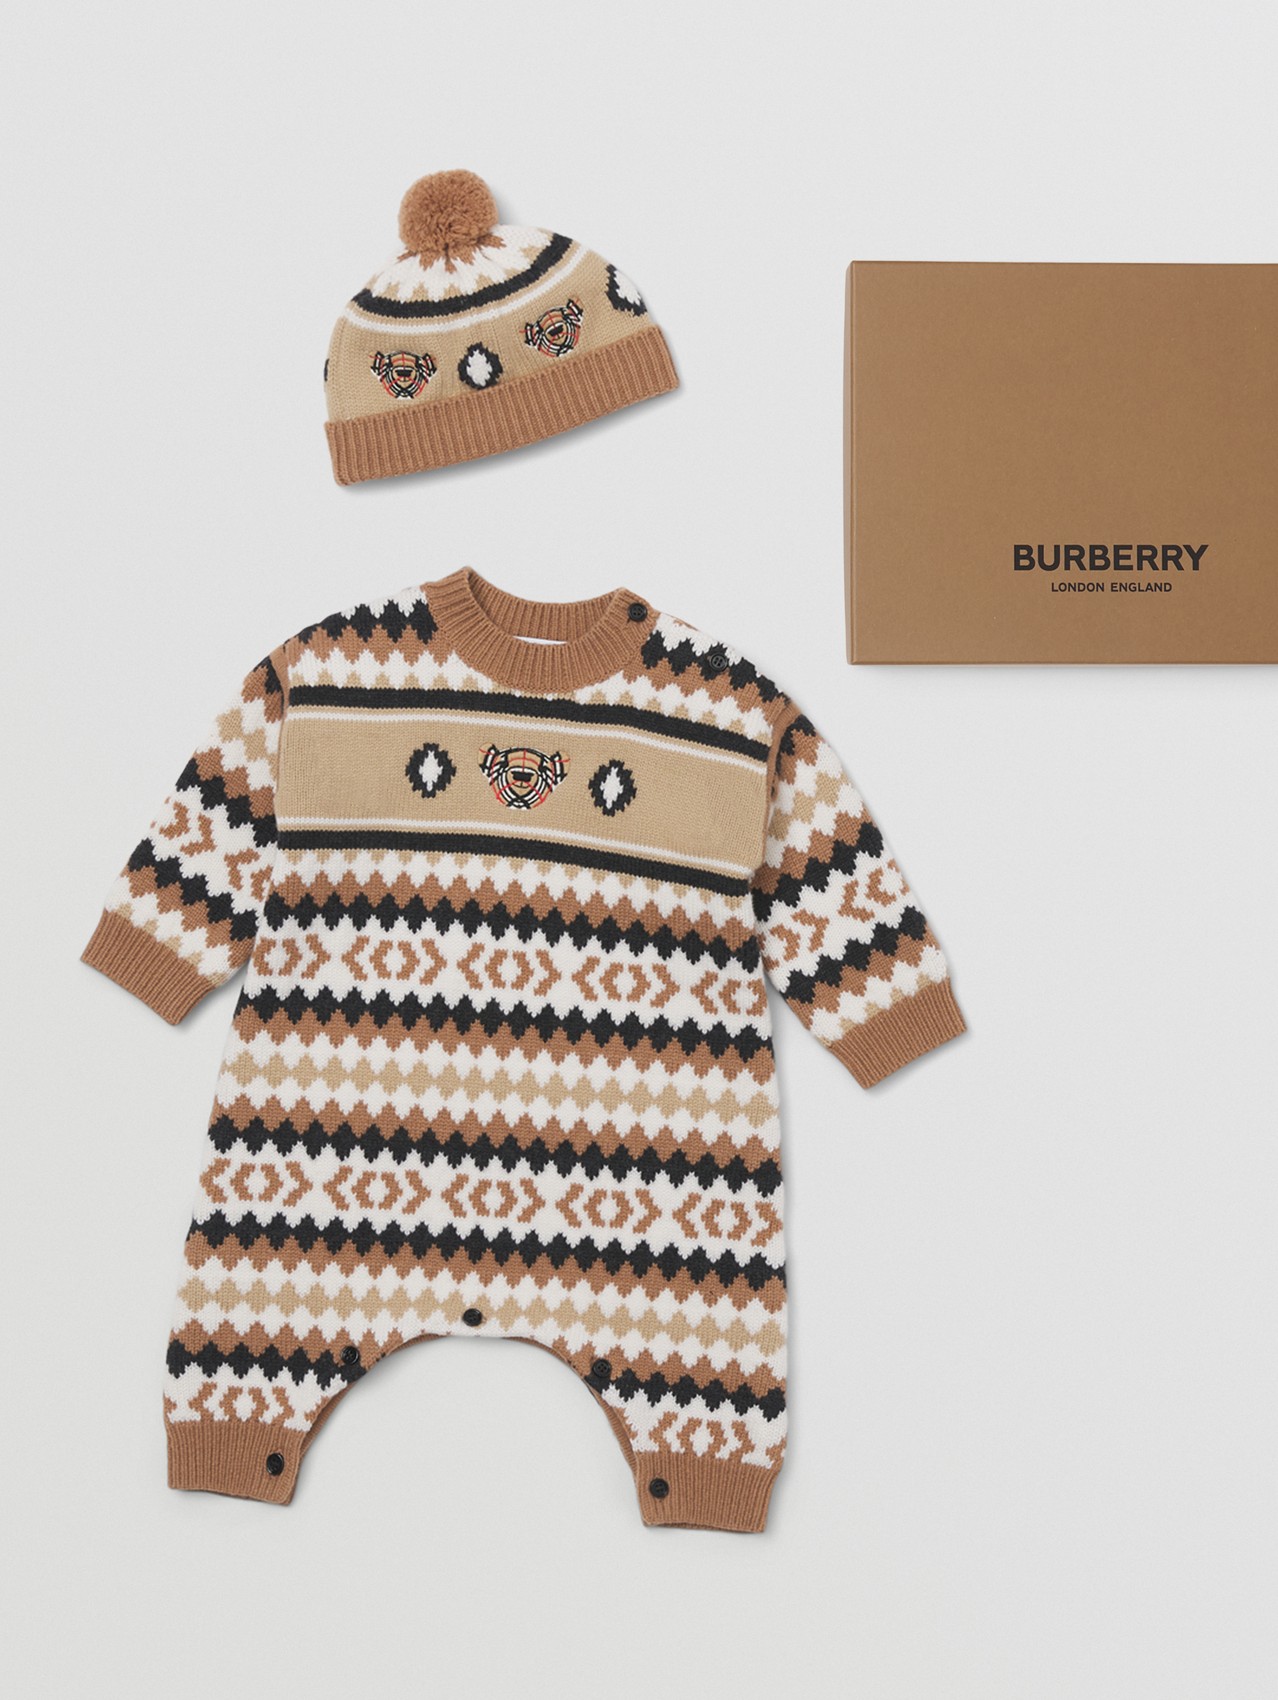 费尔岛花纹羊绒混纺两件套婴儿礼品套装 in 驼色